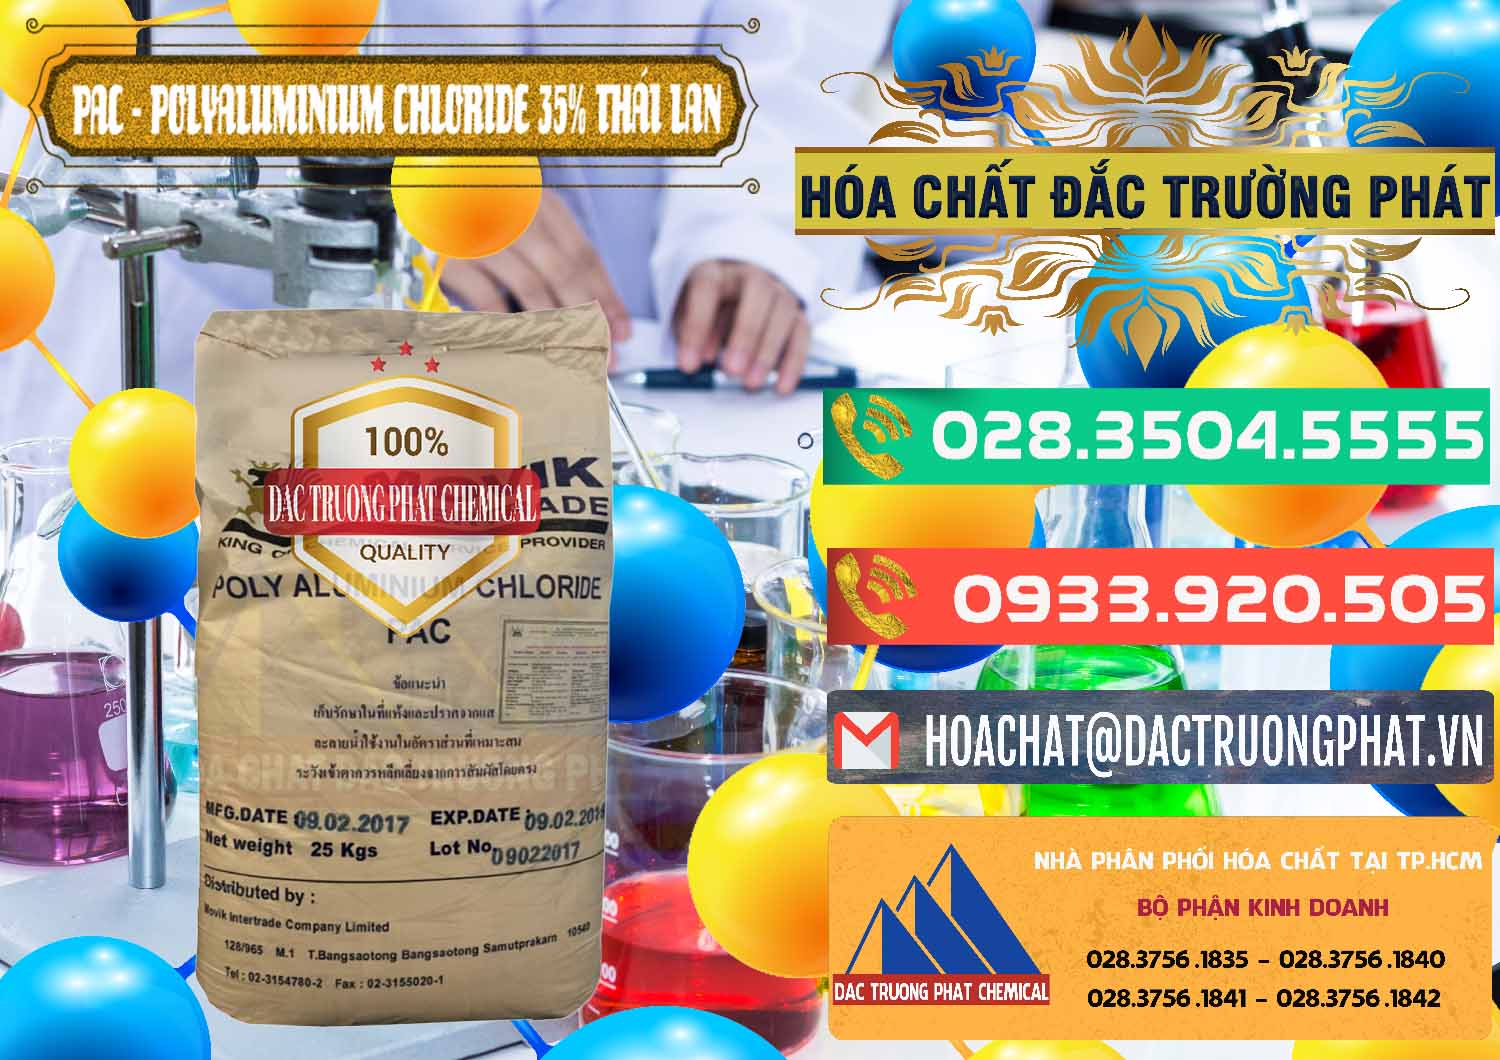 Chuyên bán ( cung ứng ) PAC - Polyaluminium Chloride 35% Thái Lan Thailand - 0470 - Nơi chuyên phân phối ( bán ) hóa chất tại TP.HCM - congtyhoachat.com.vn